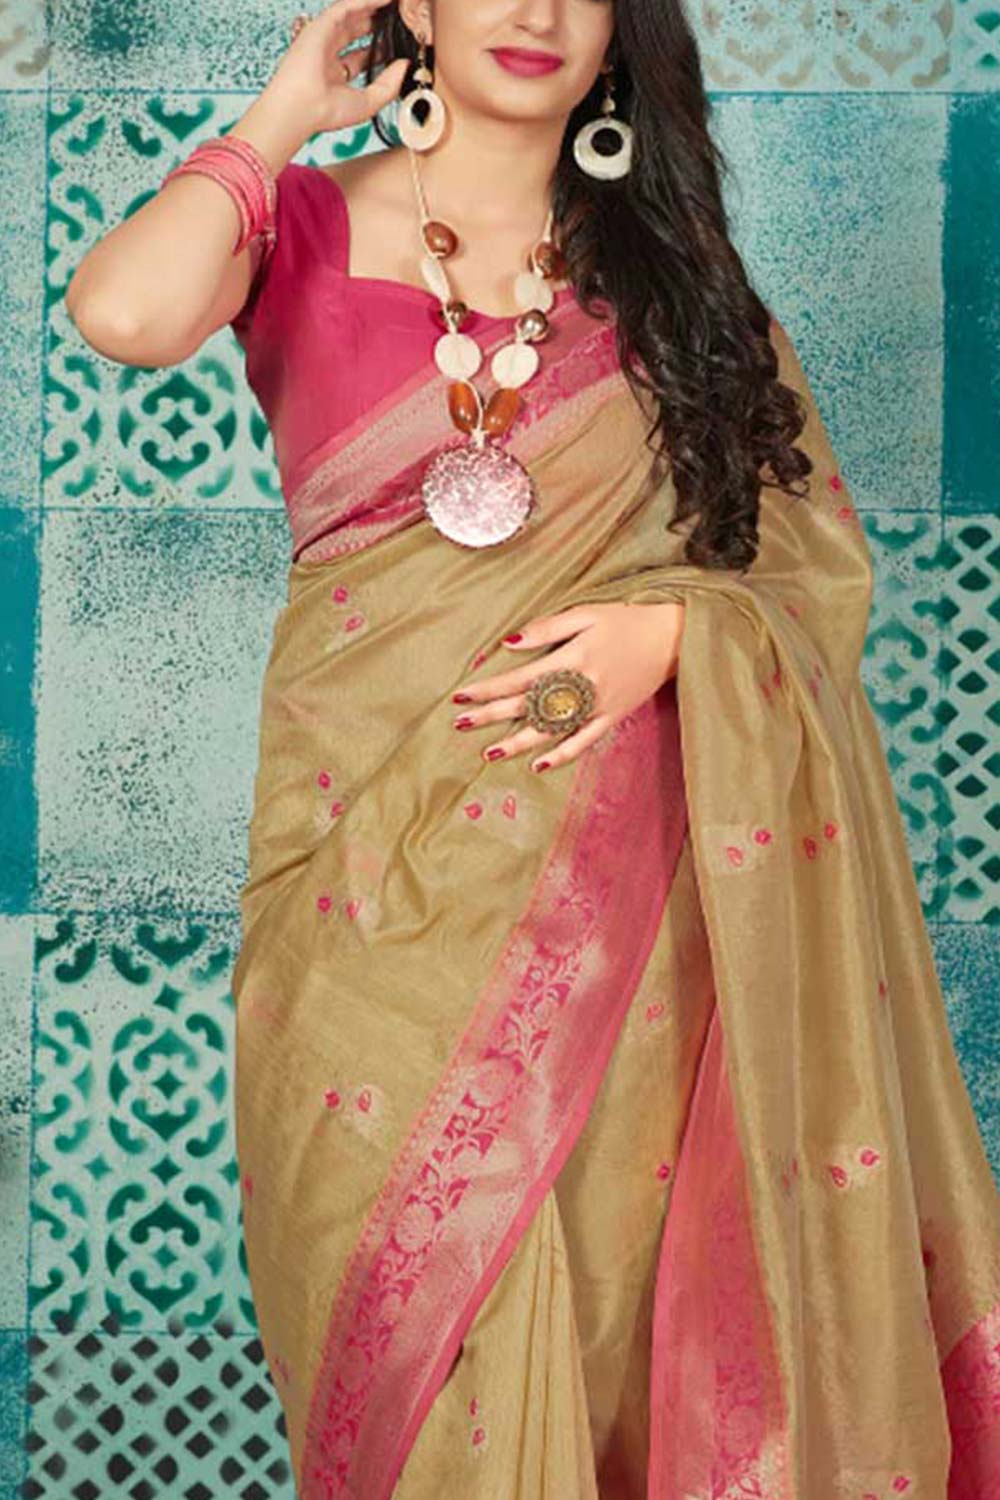 Buy Banarasi Art Silk Zari Woven Saree in Light Green - Back